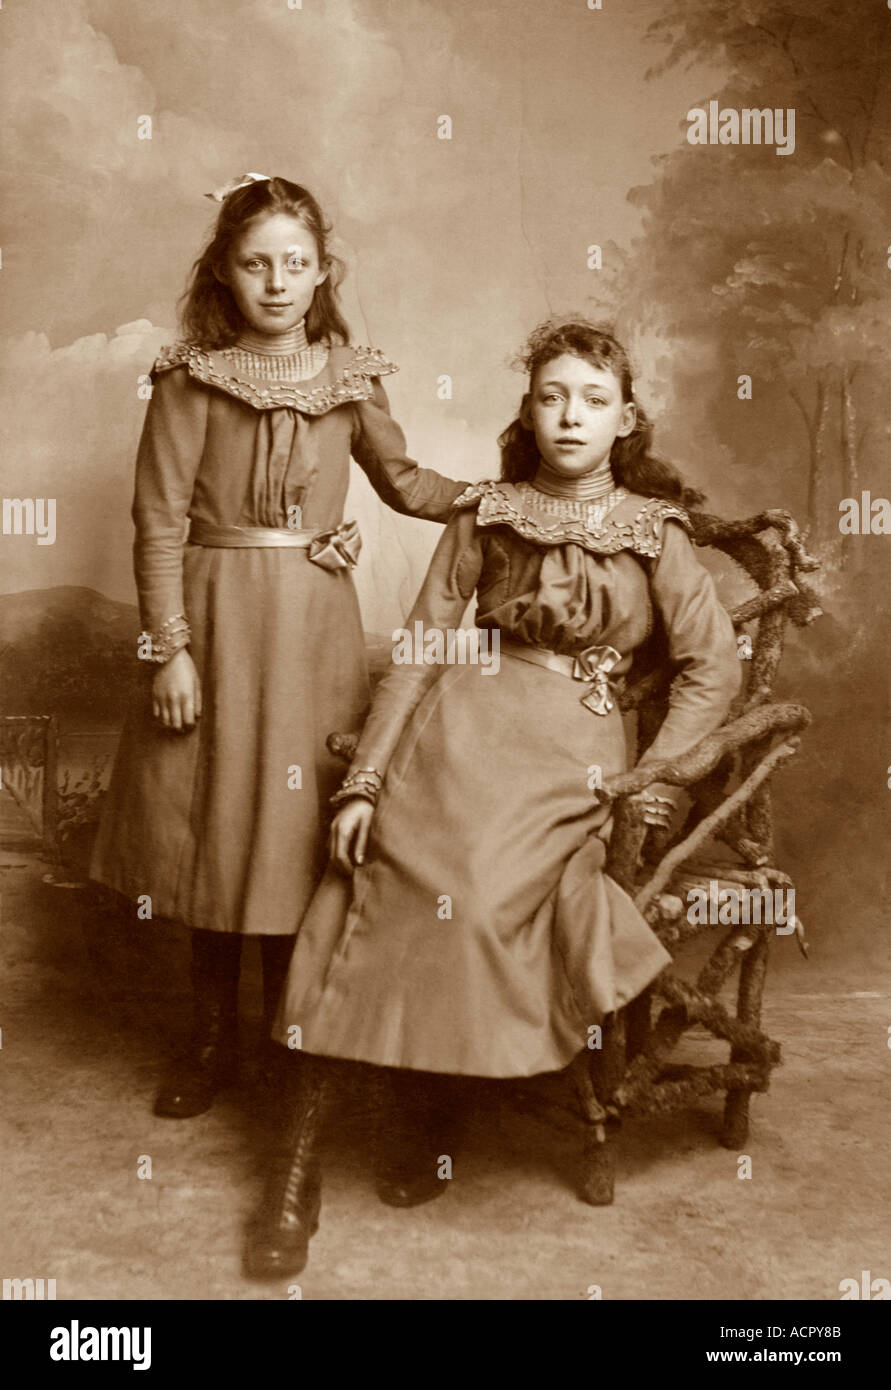 Original-Schrankkarte Fotografie Porträt zweier hübscher junger Mädchen aus viktorianischer oder edwardianischer Ära, wahrscheinlich Schwestern - um 1899 Salisbury, Wiltshire, Großbritannien Stockfoto